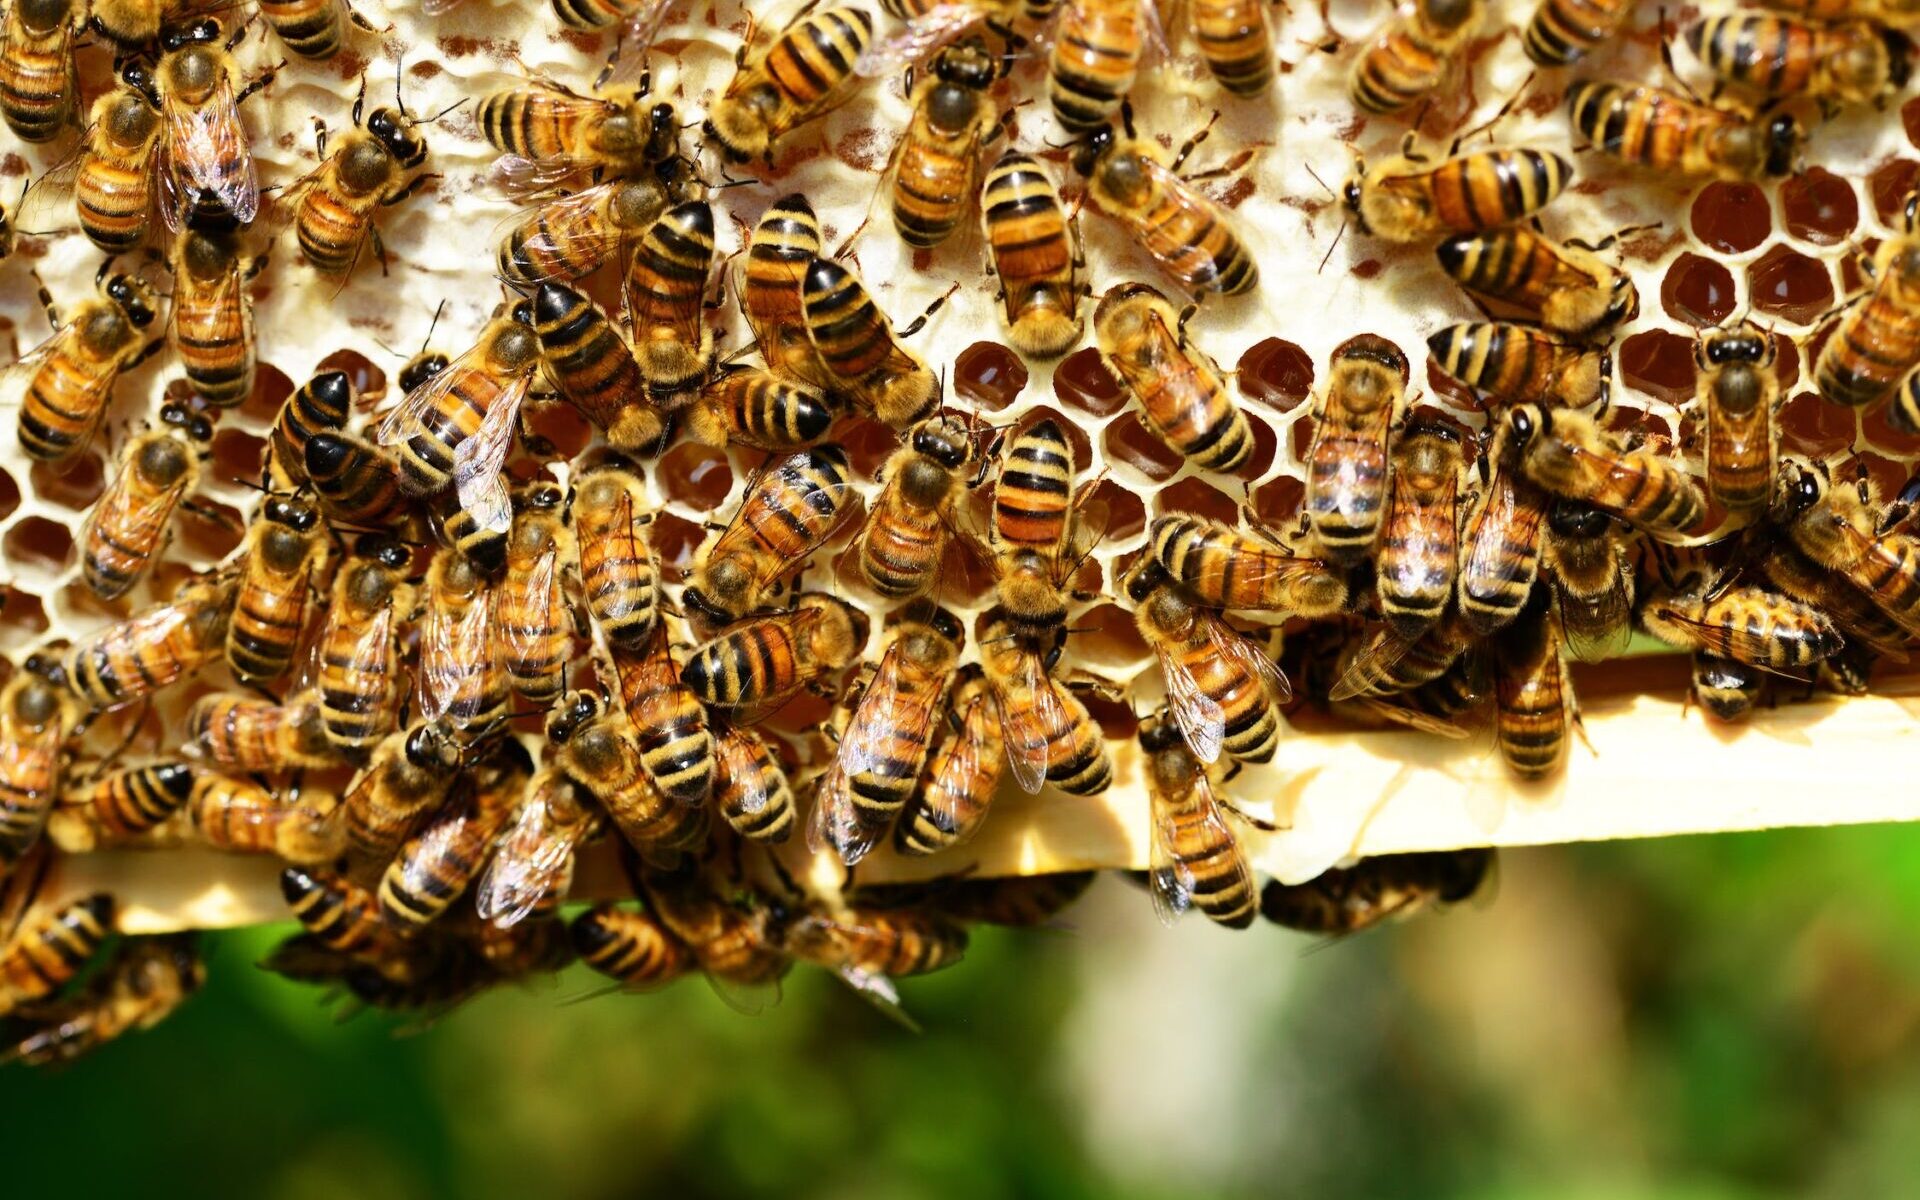 Szkolenie dla pszczelarzy z powiatu kłodzkiego już w tę sobotę! /fot. pexels